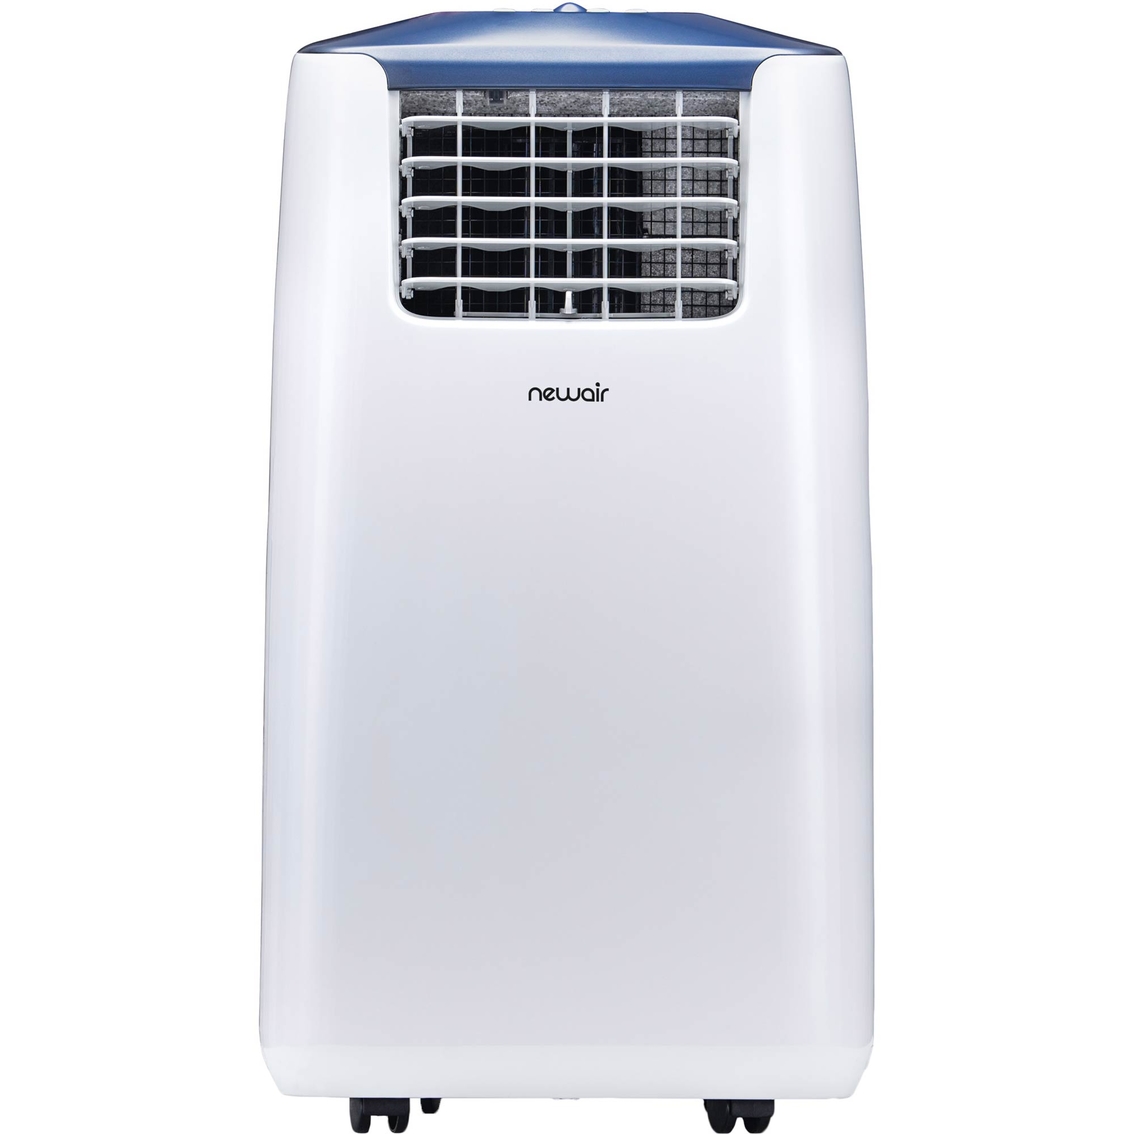 NewAir Portable Air Conditioner, 8,600 BTU (8,200 BTU DOE) With Remote - Image 2 of 10